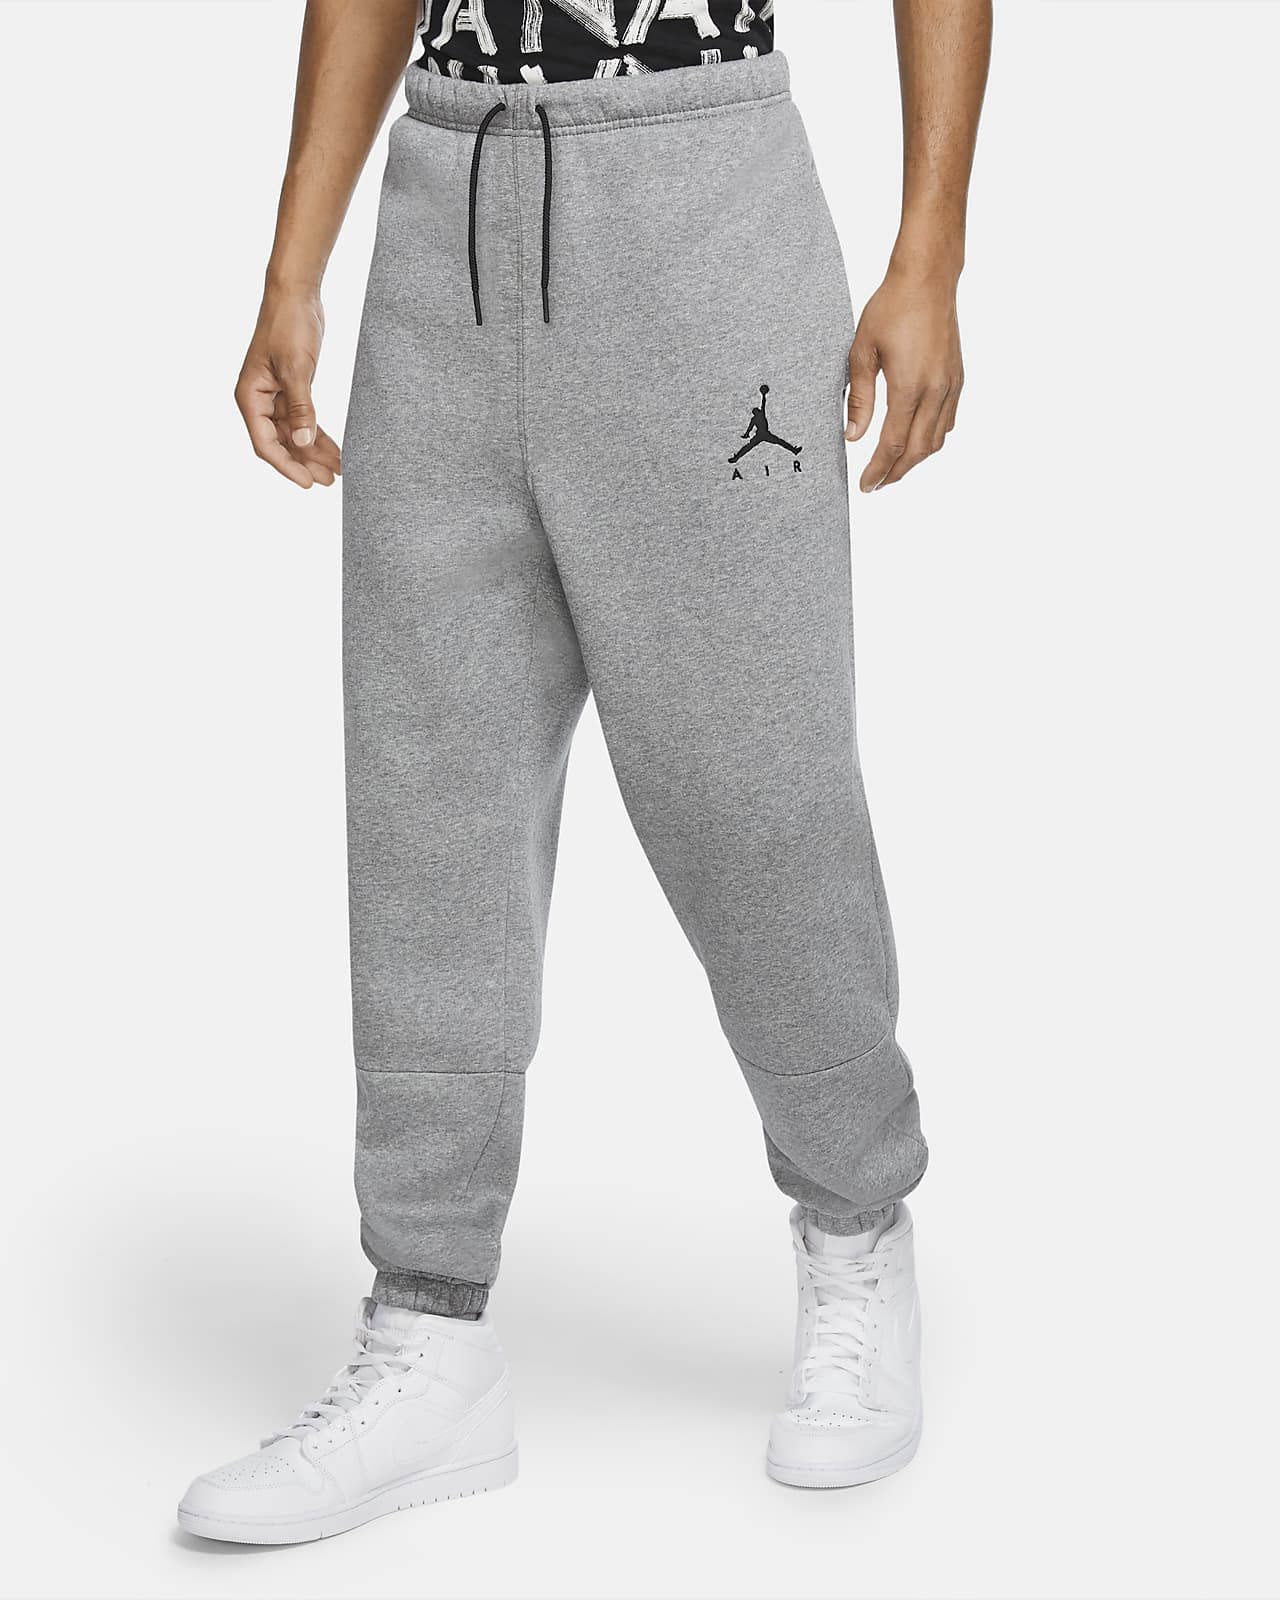 Jordan Jumpman Air. Nike 